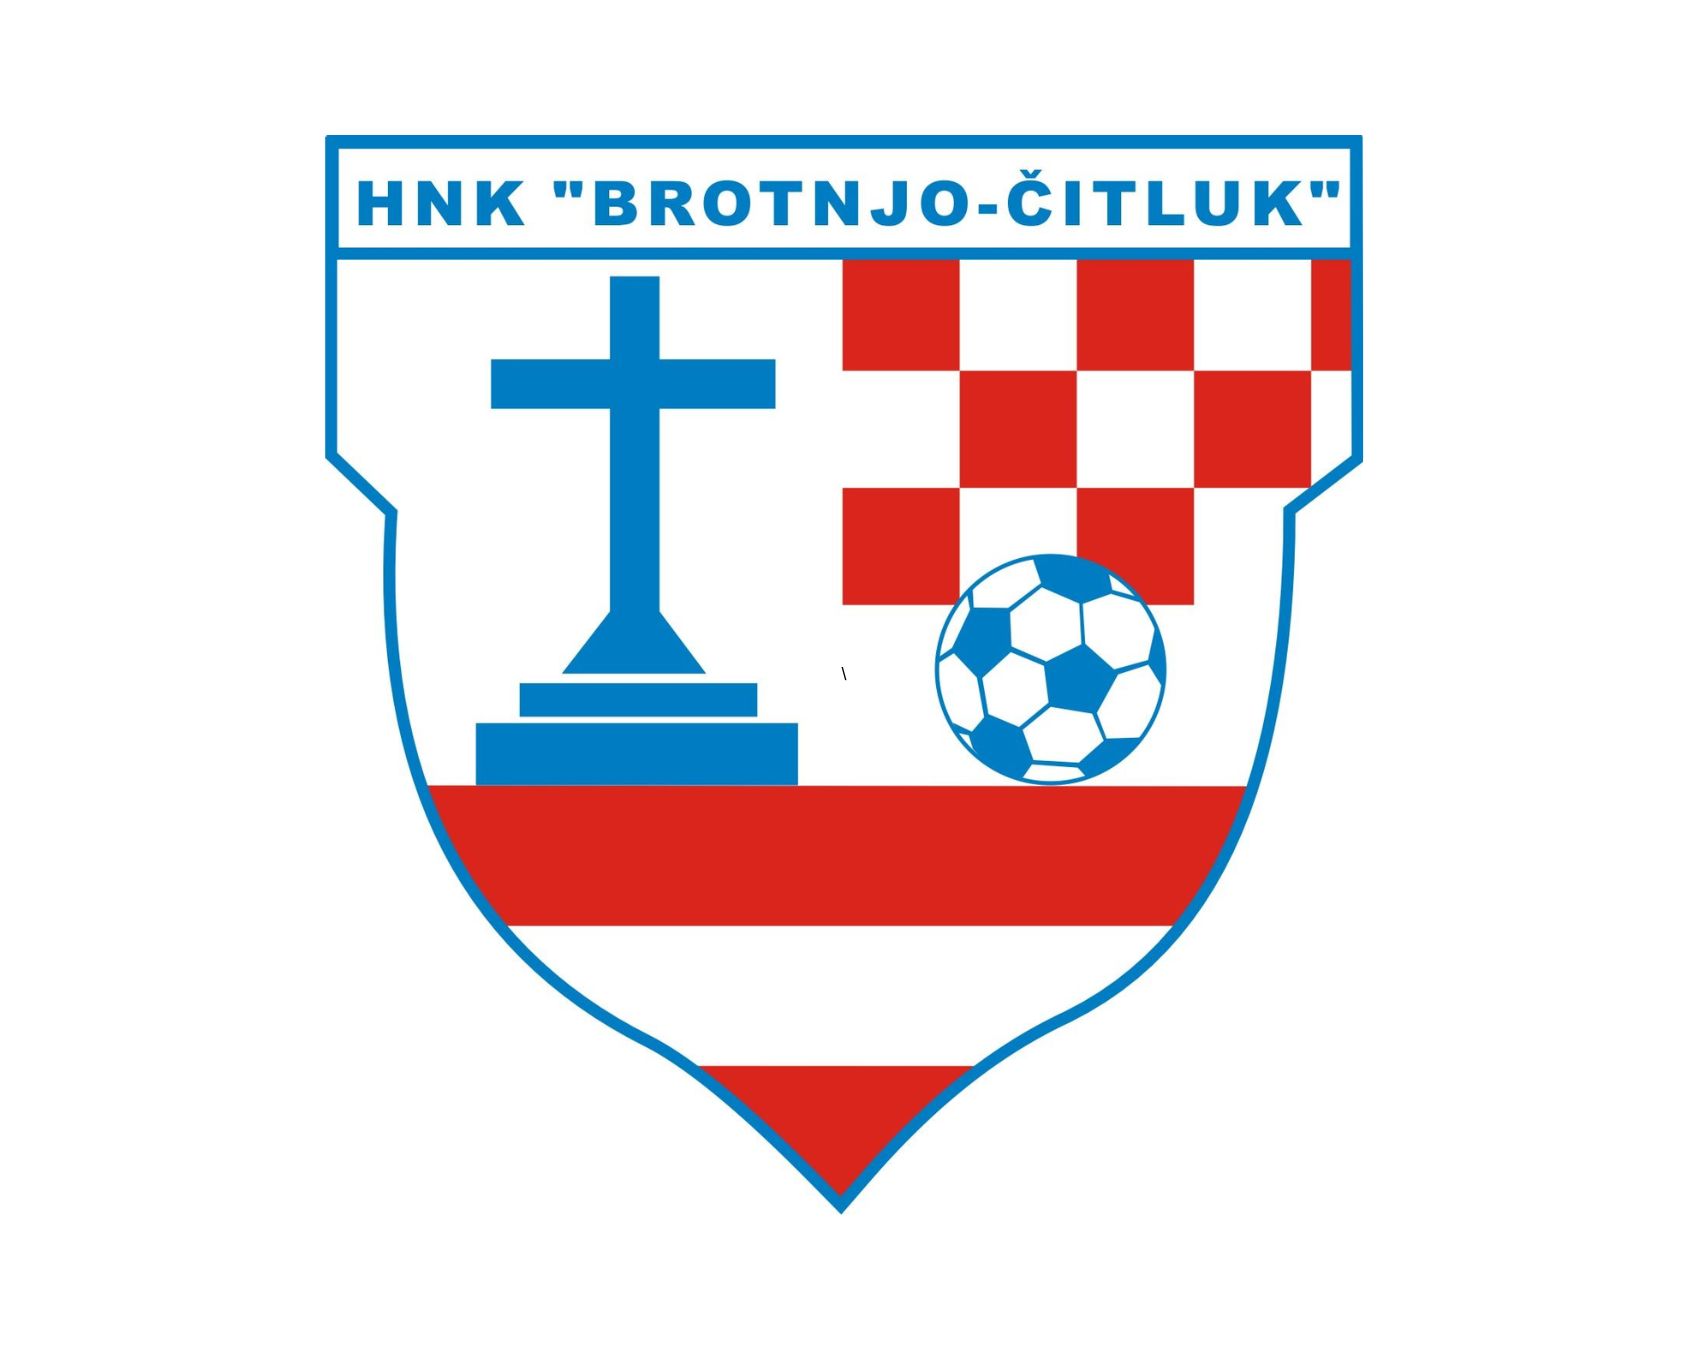 nk-brotnjo-18-football-club-facts